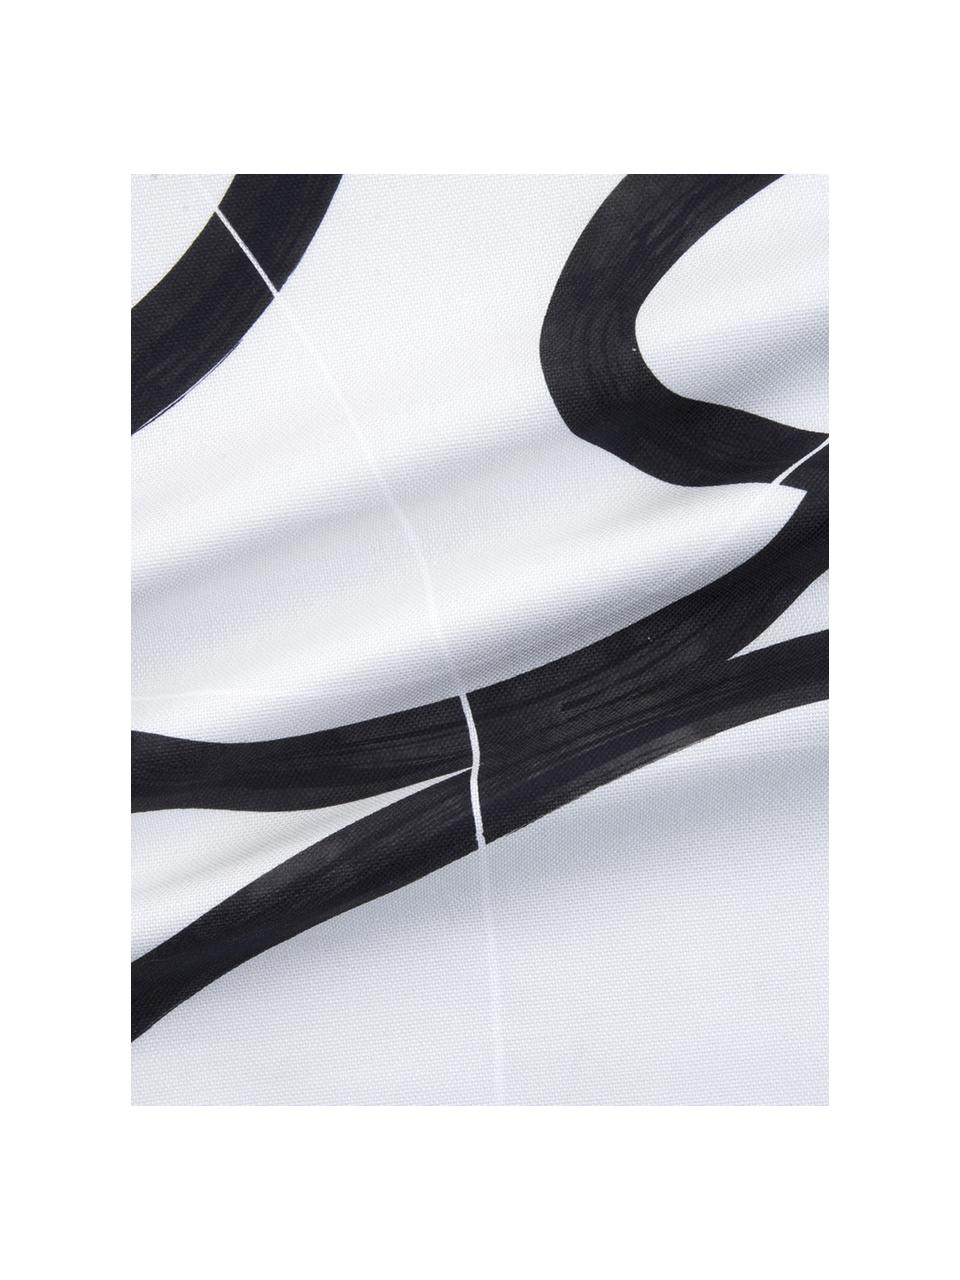 Kissenhülle Elijah mit abstraktem Print, 100% Baumwolle, Beige, Schwarz, Weiß, 40 x 40 cm